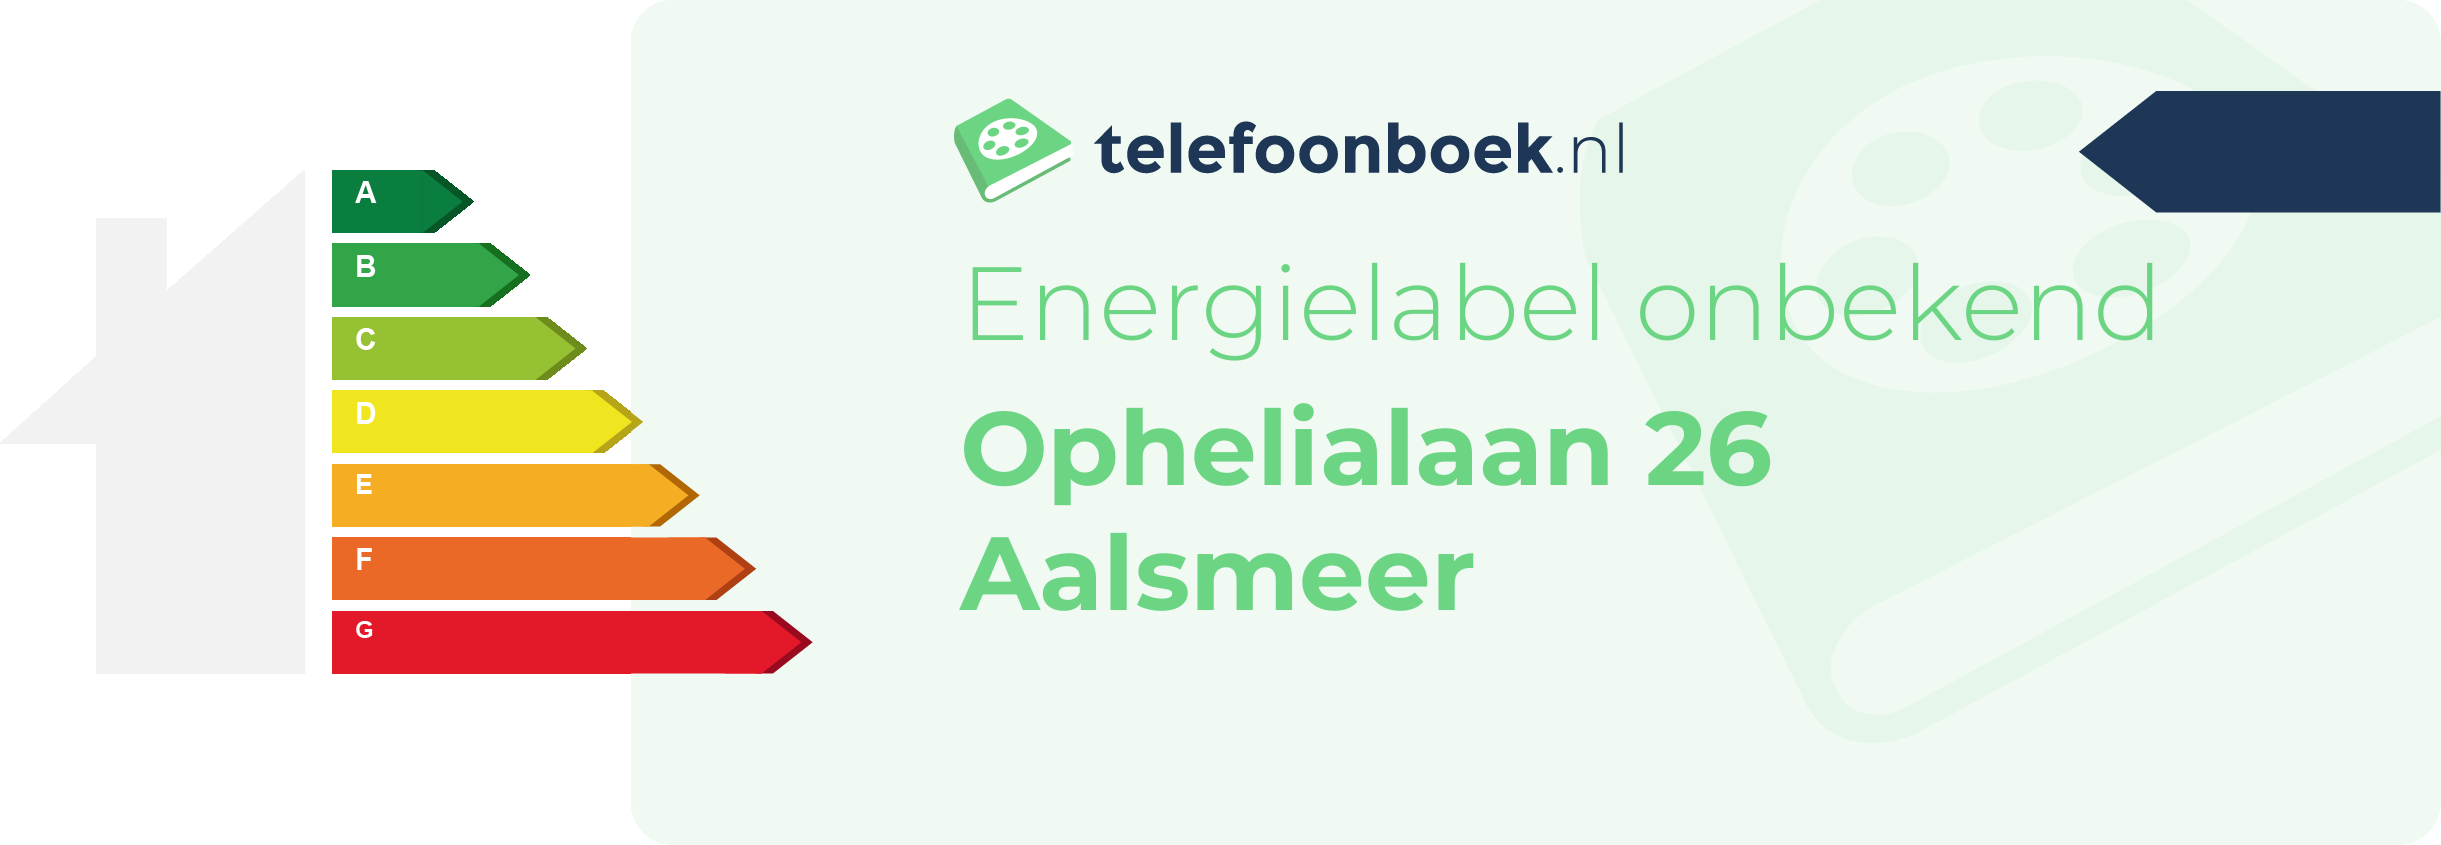 Energielabel Ophelialaan 26 Aalsmeer